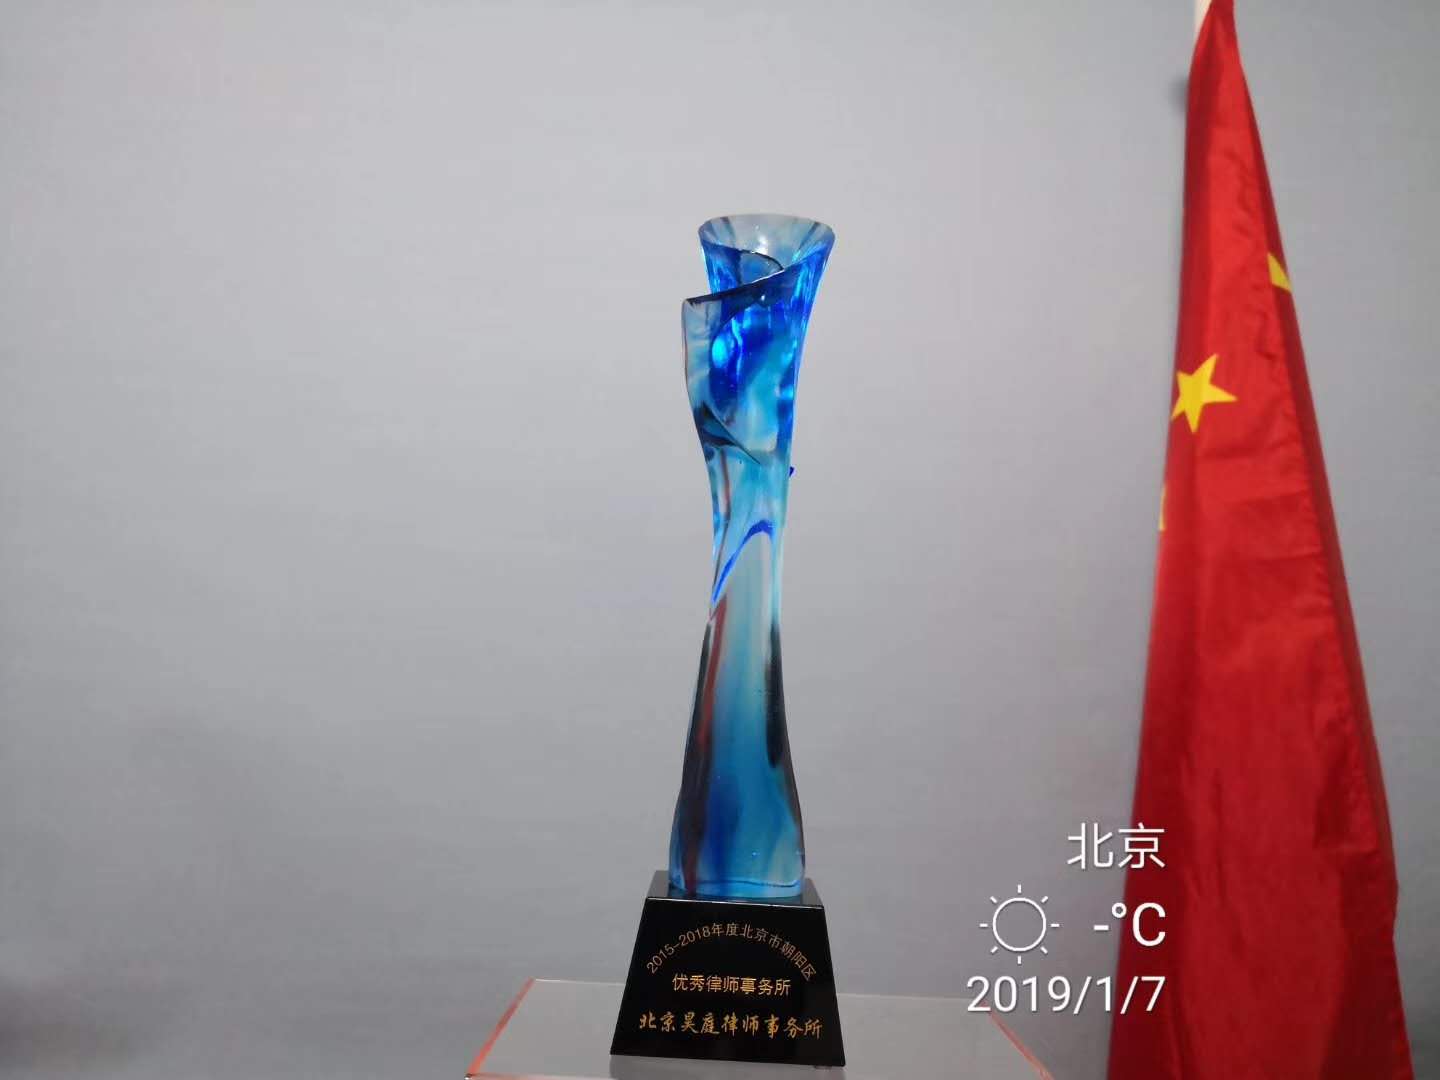 本所被评为2015-2018年北京市朝阳区优秀律师事务所